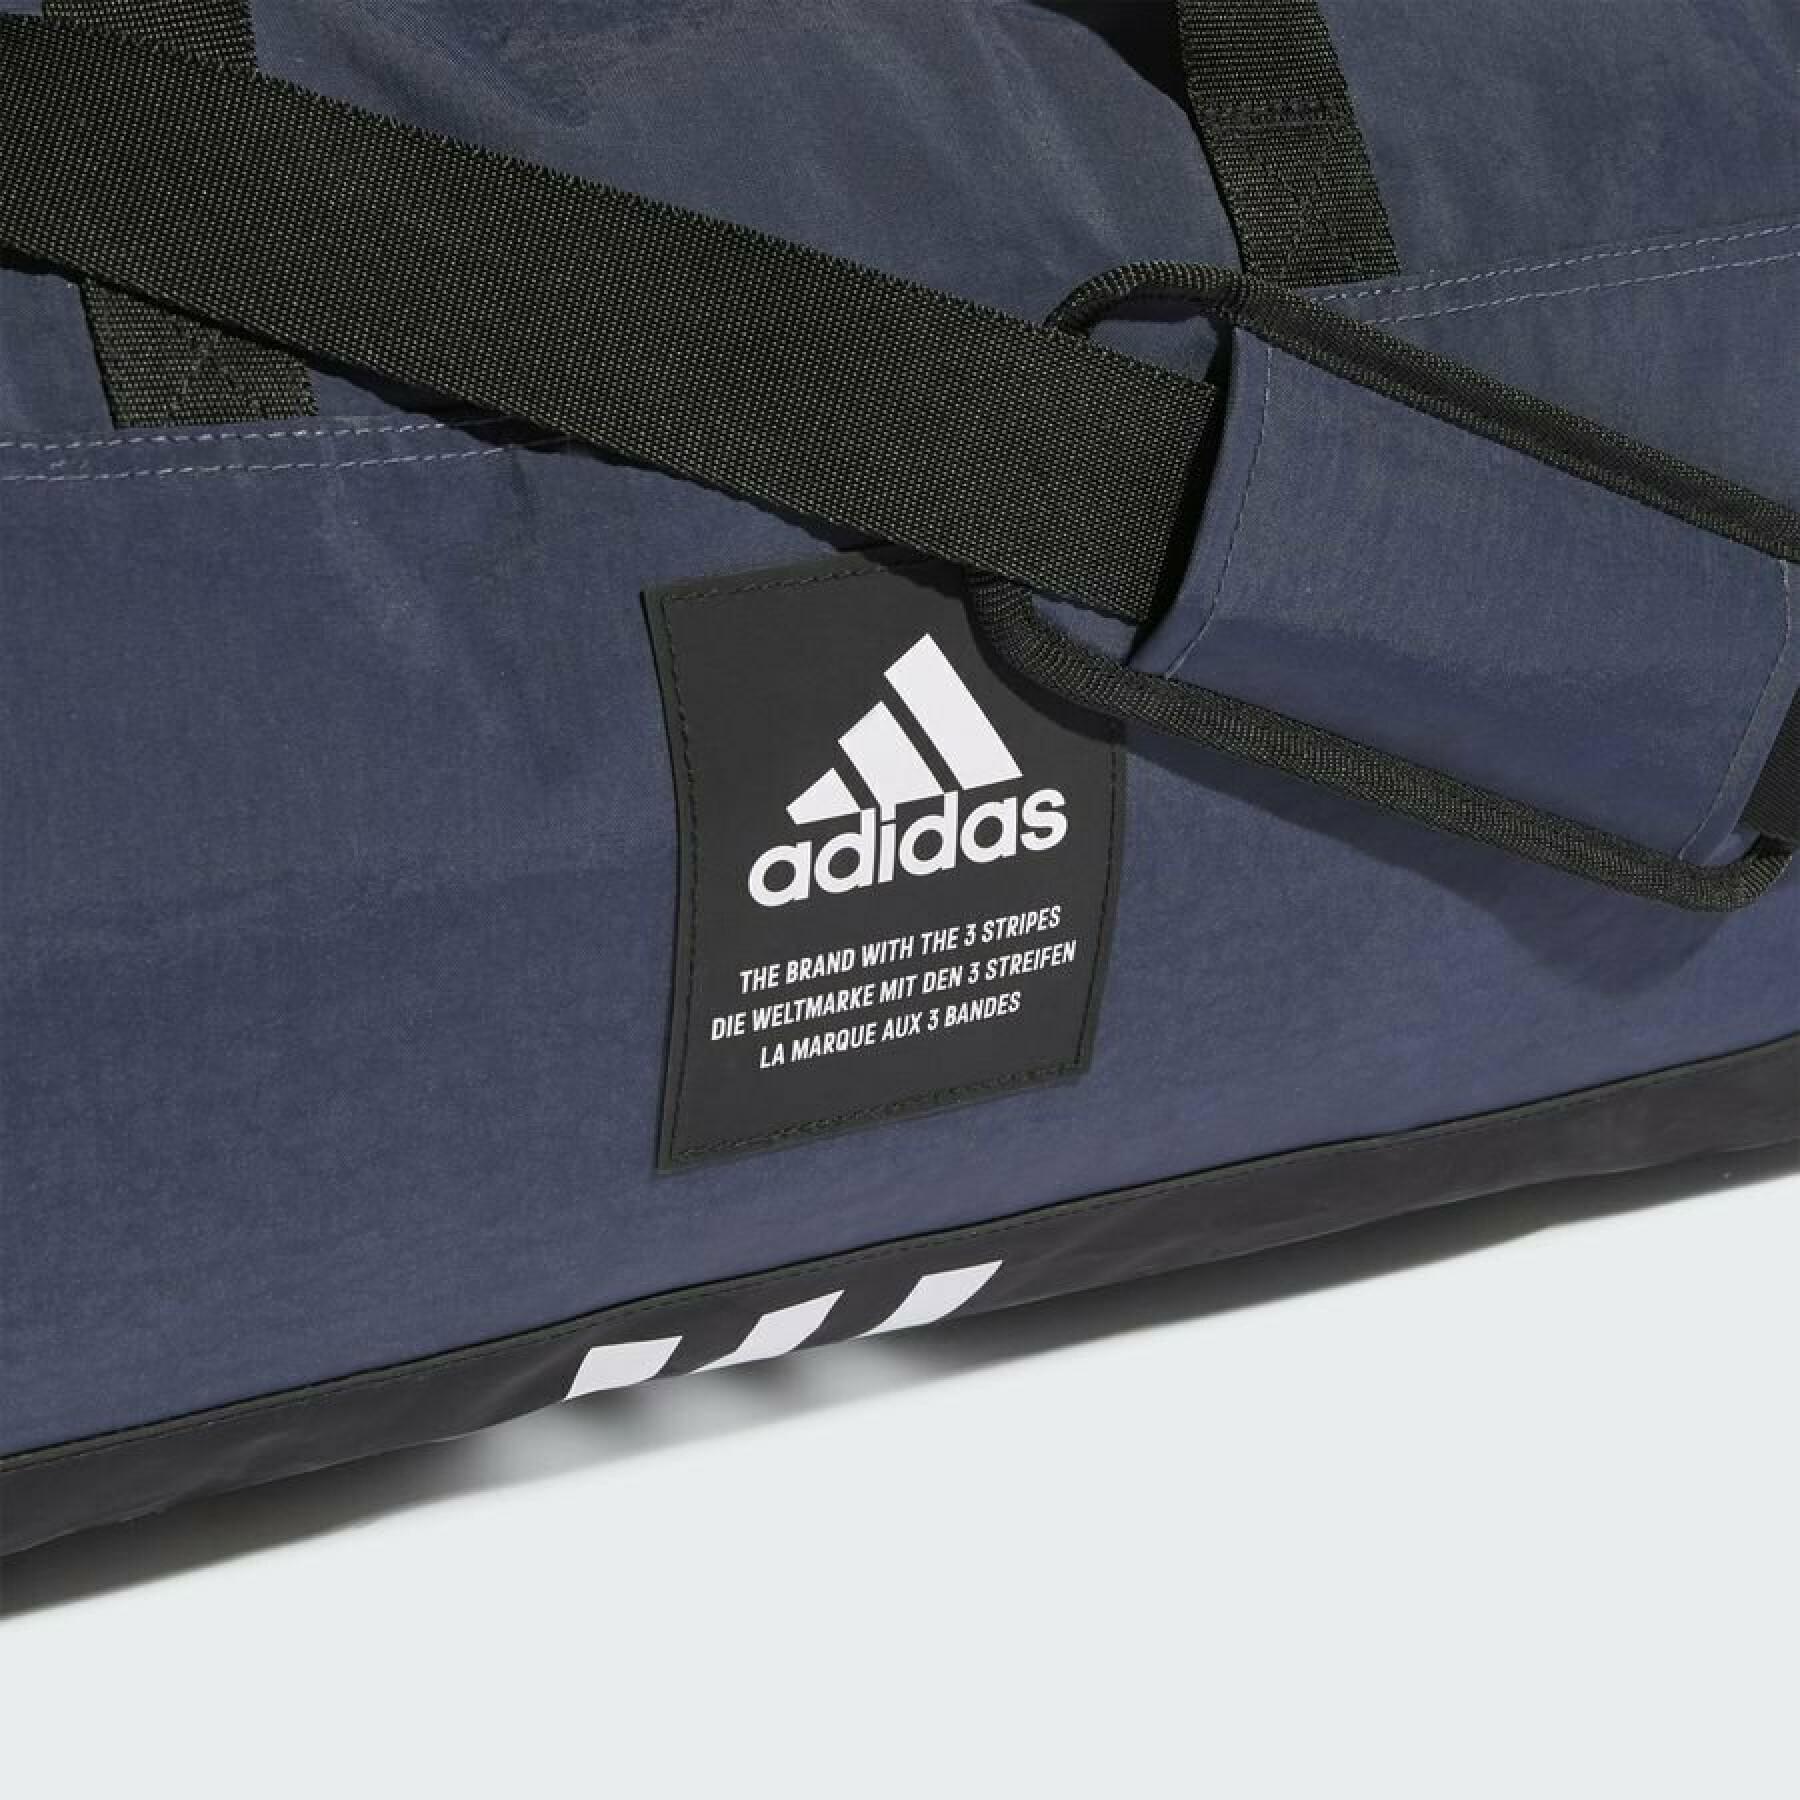 Sports bag adidas 4ATHLTS